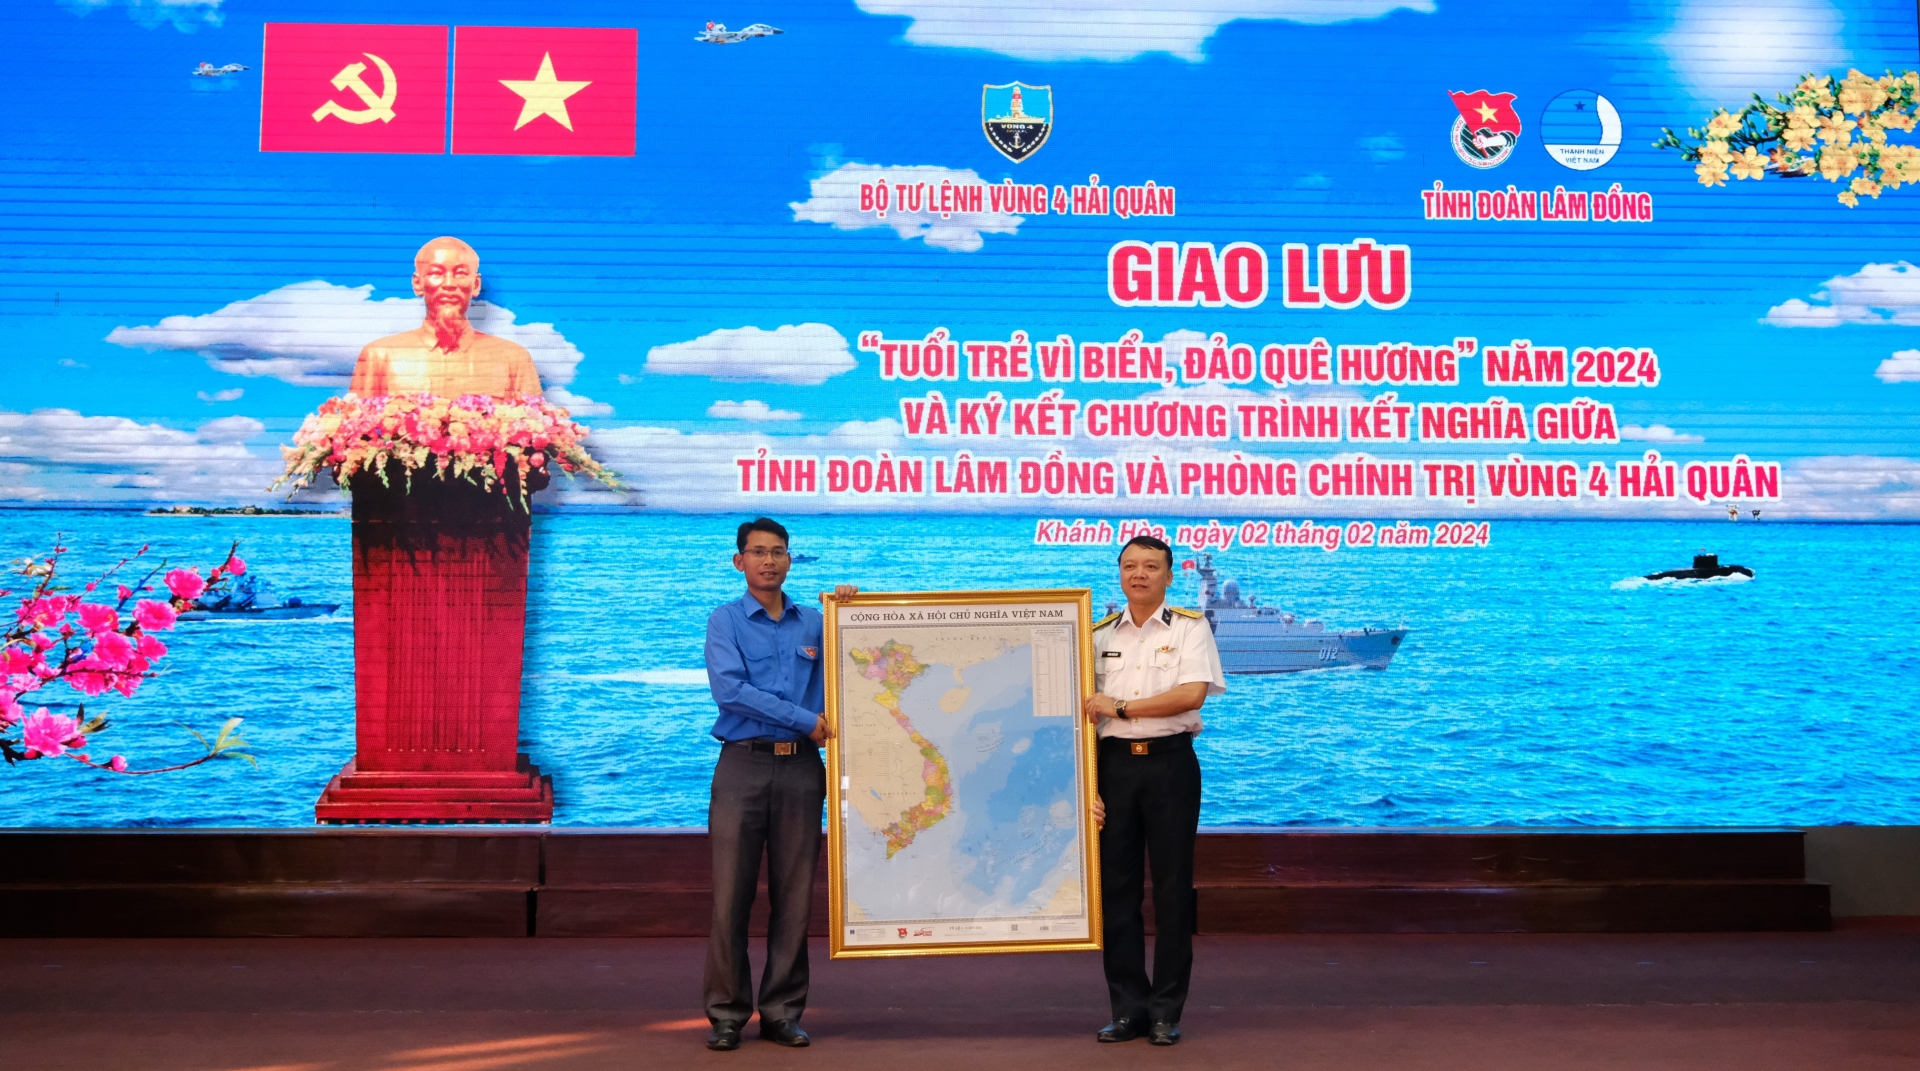 Tỉnh Đoàn Lâm Đồng tặng Phòng Chính trị Vùng 4 50 tấm bản đồ Việt Nam để hưởng ứng Cuộc vận động Tự hào một dải non sông